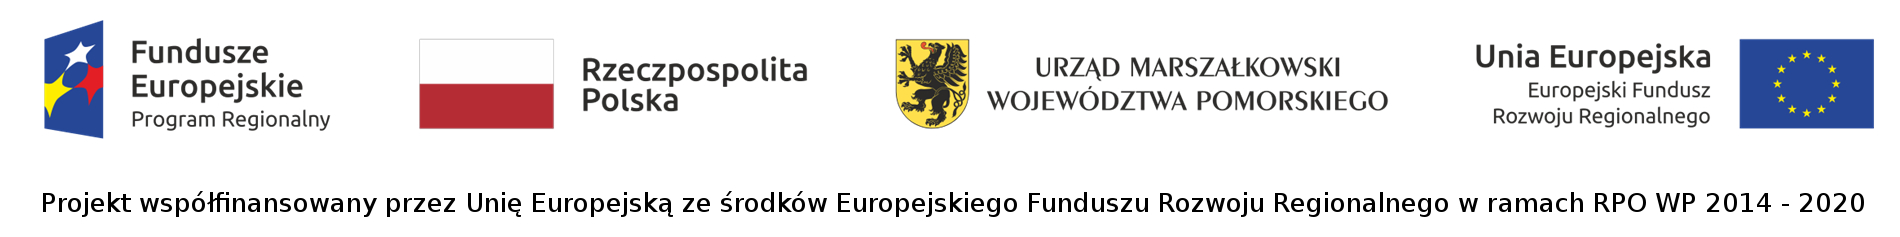 Logotypy - Fundusze Europejskie, RP, UMWP, UE 2